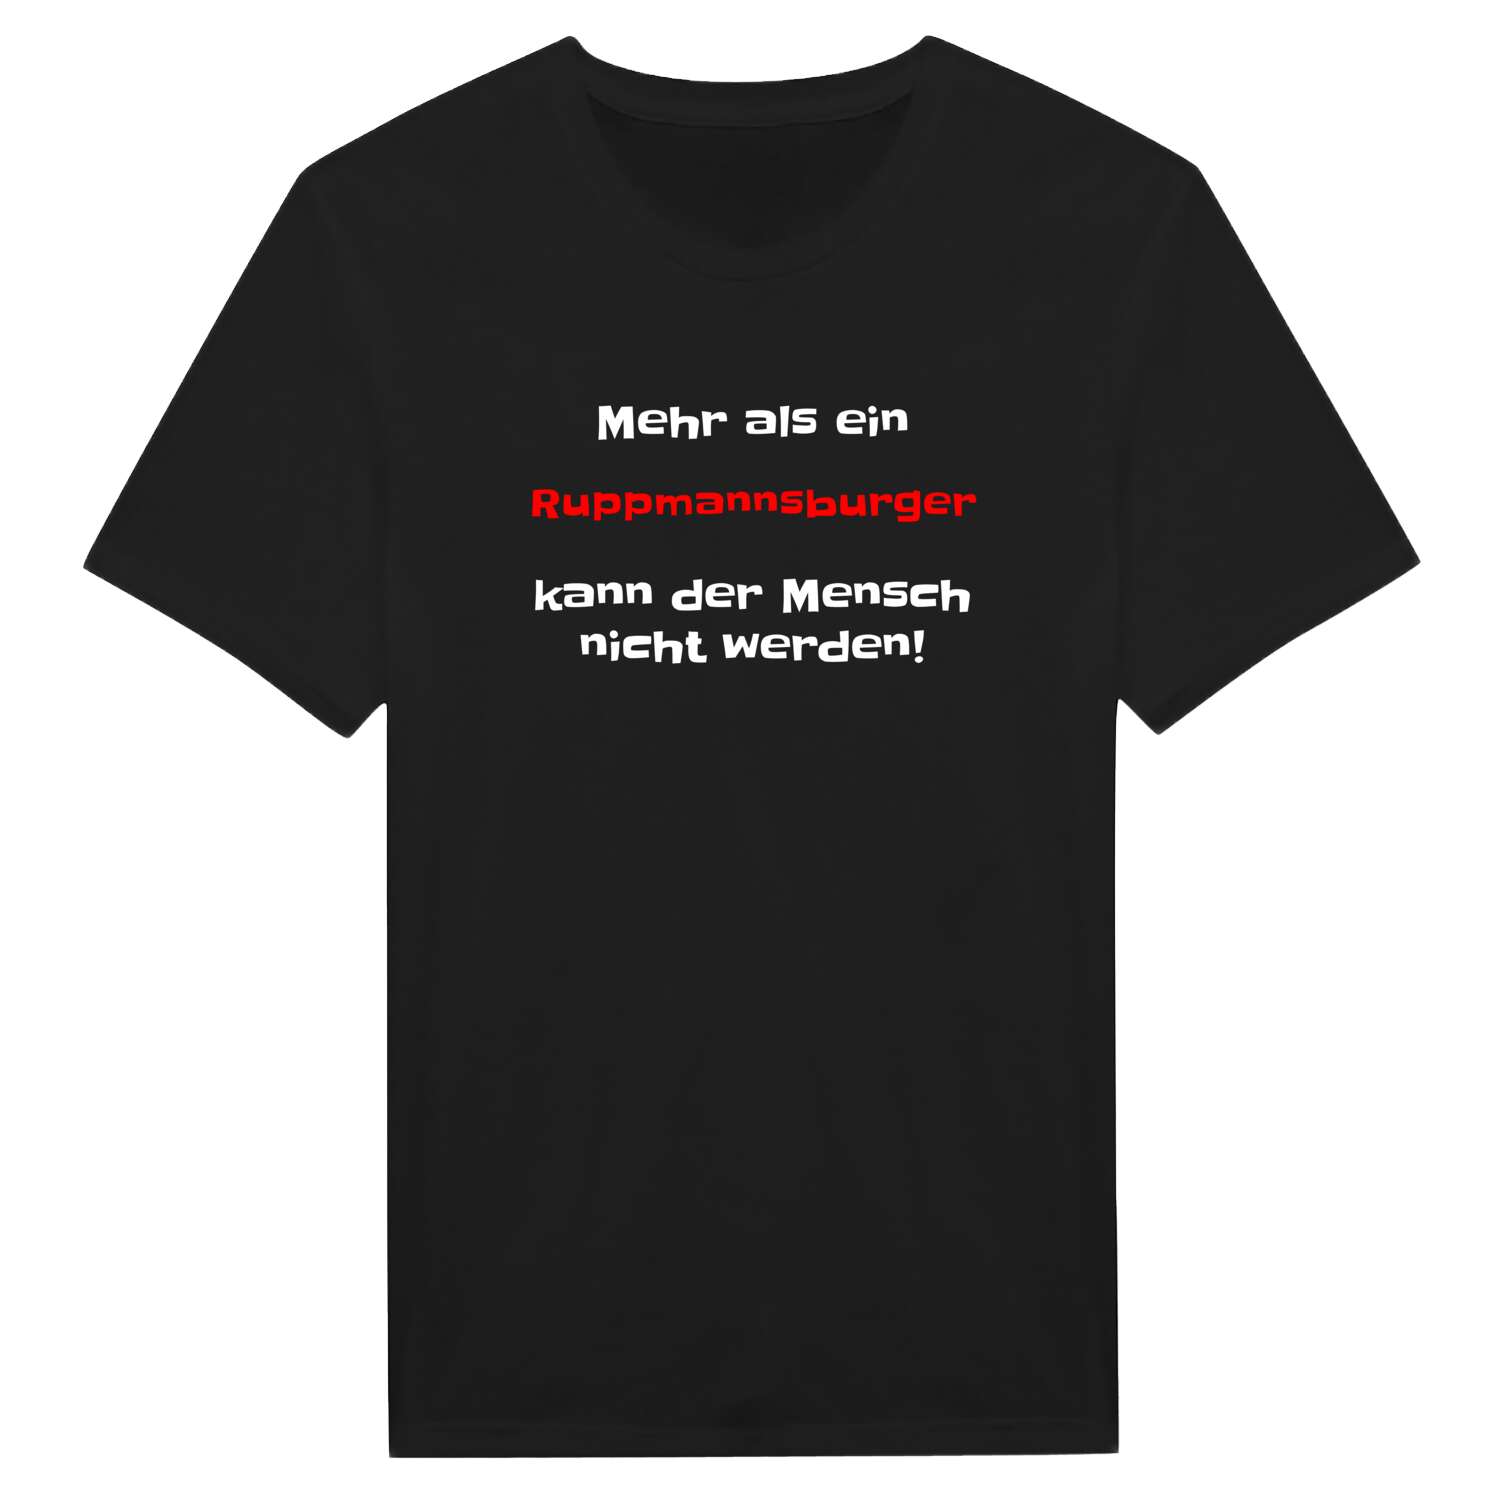 Ruppmannsburg T-Shirt »Mehr als ein«